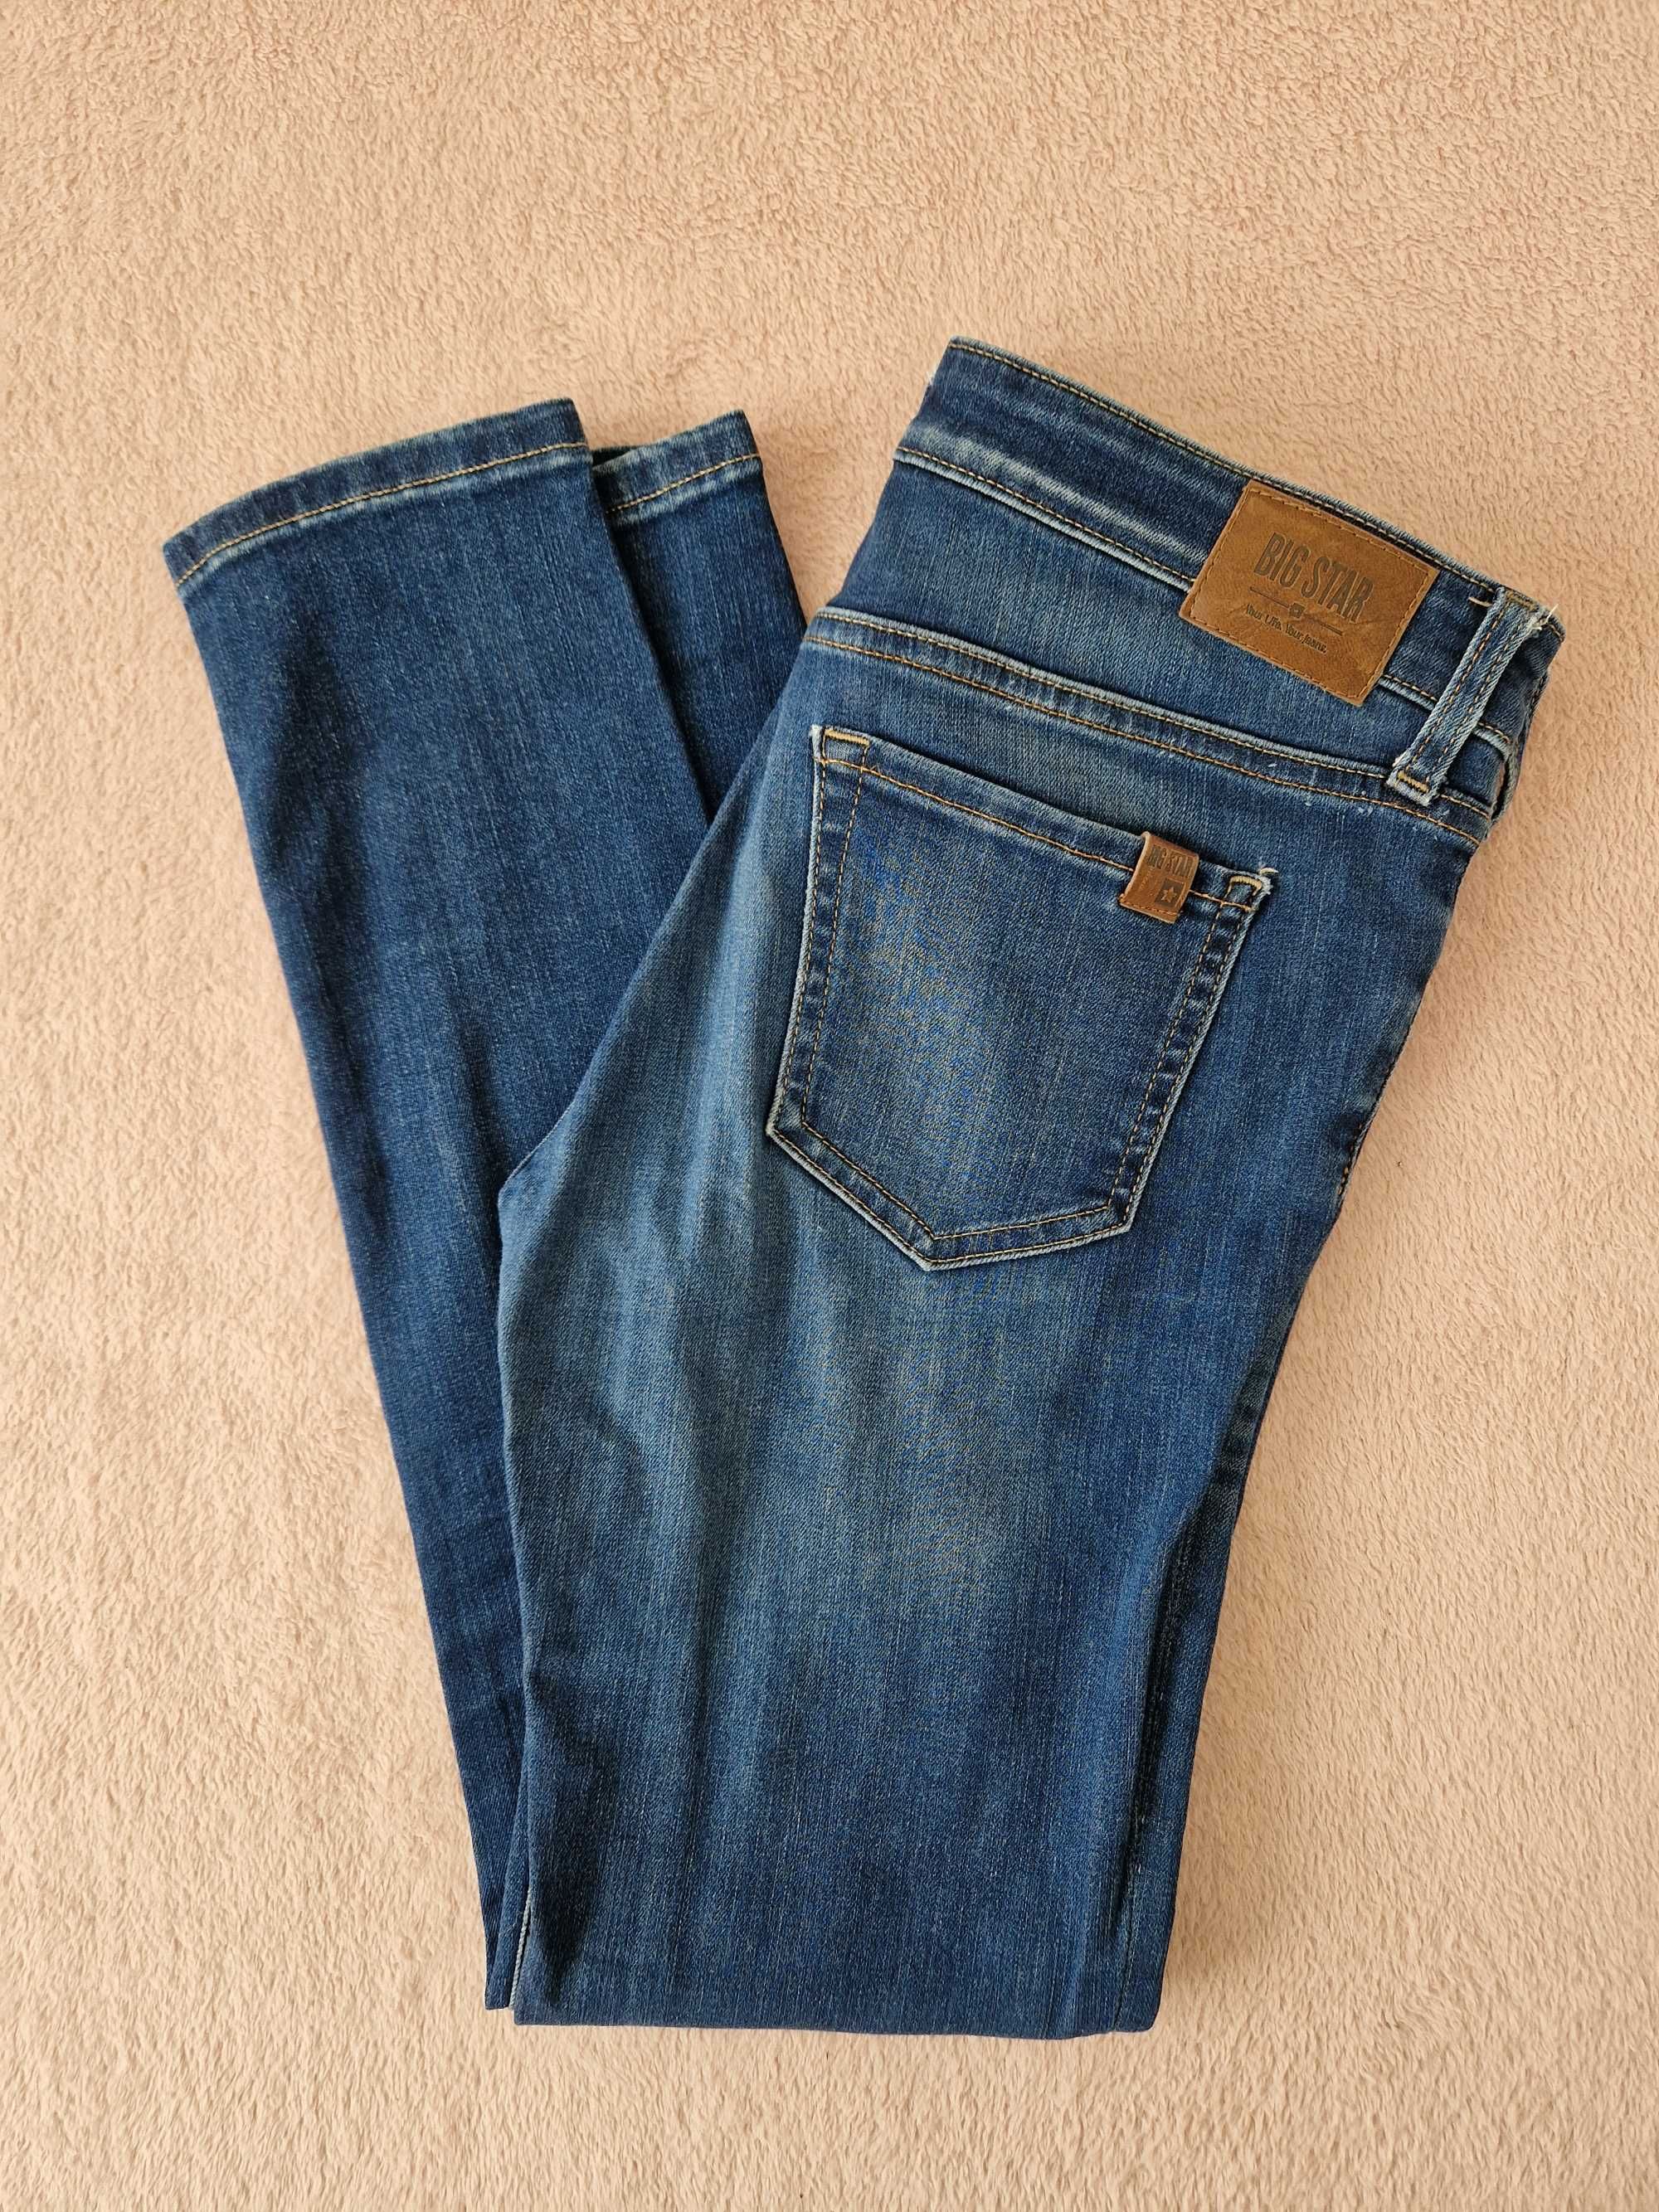 Spodnie BIG STAR jeans